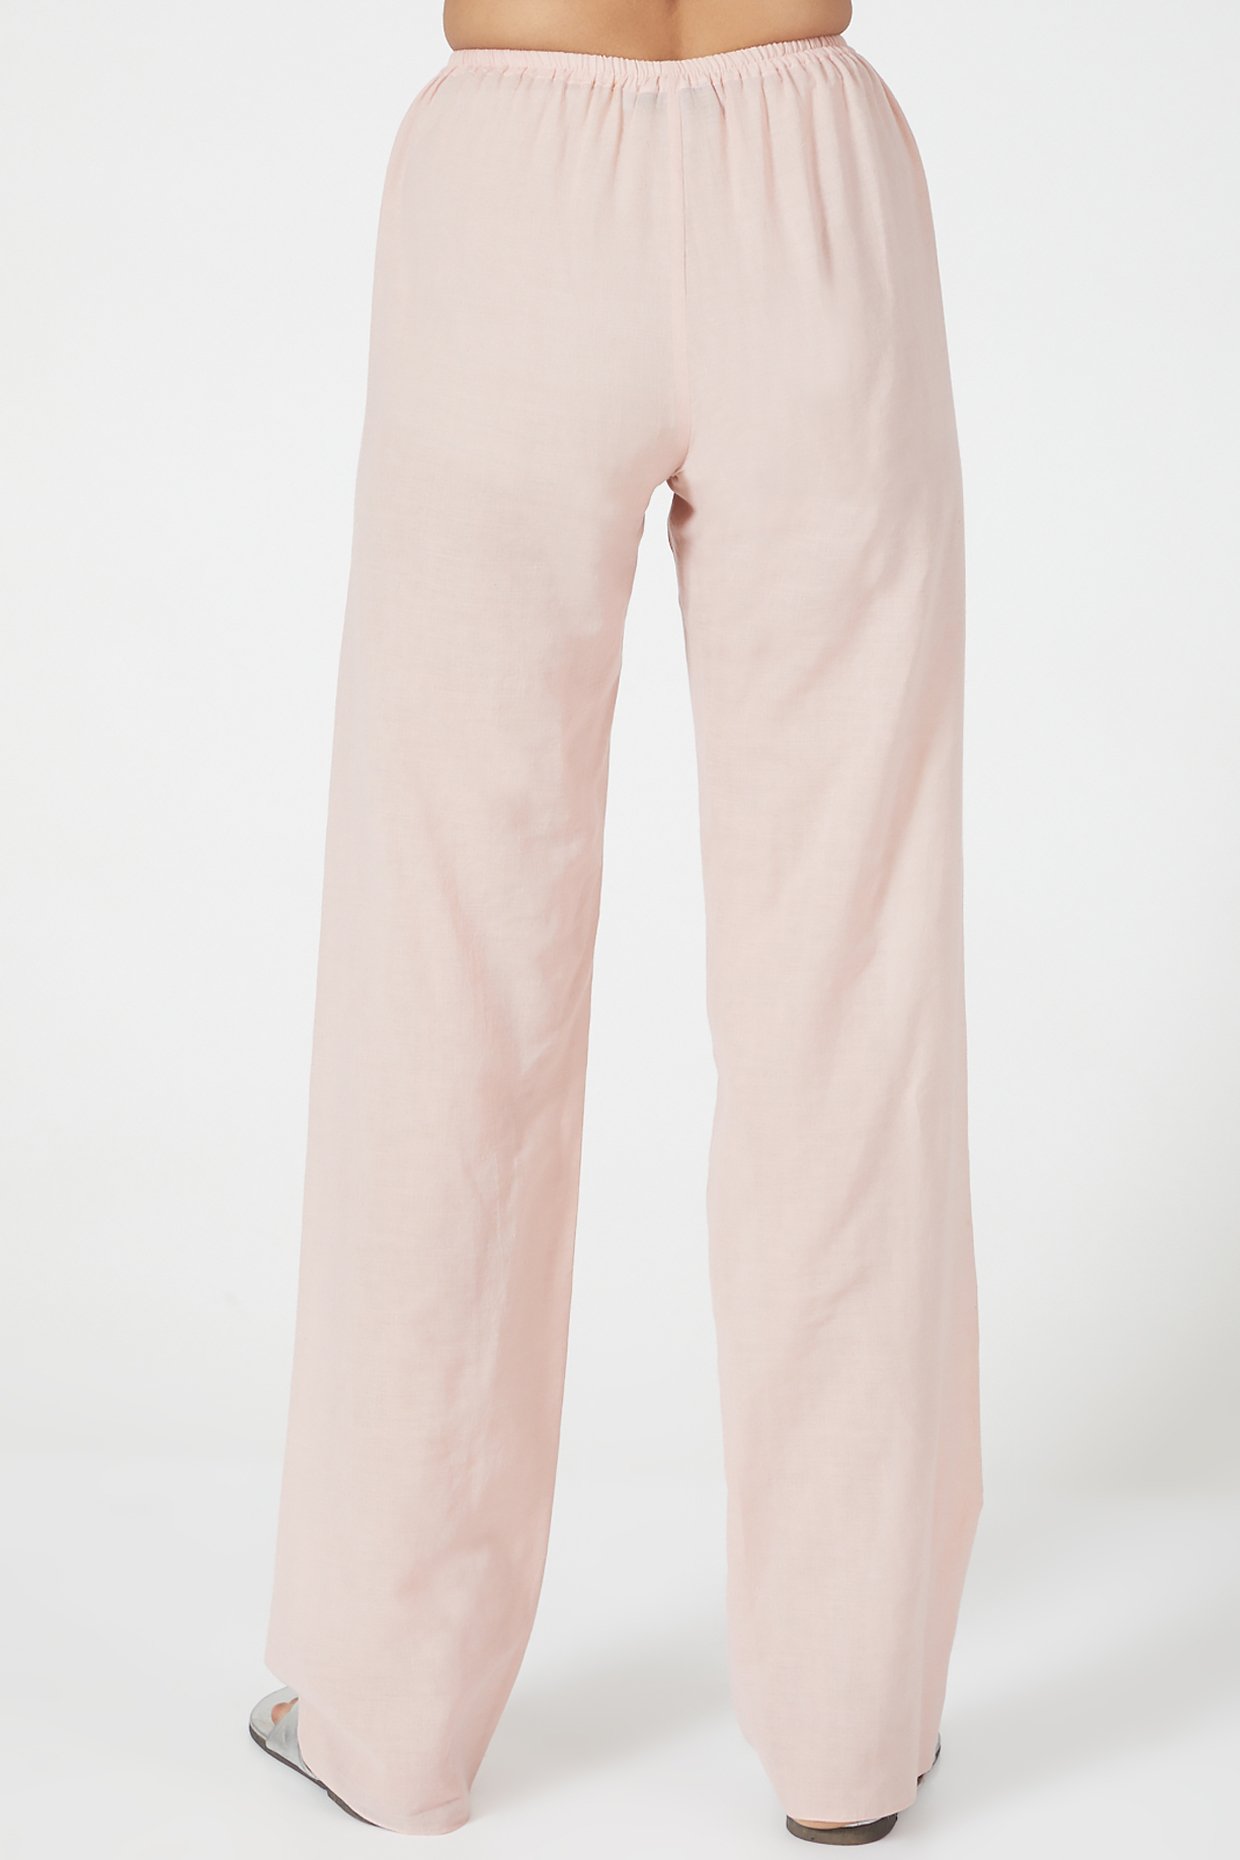 Desmond & Dempsey Lounge Plain Linen Trousers | Shopbop